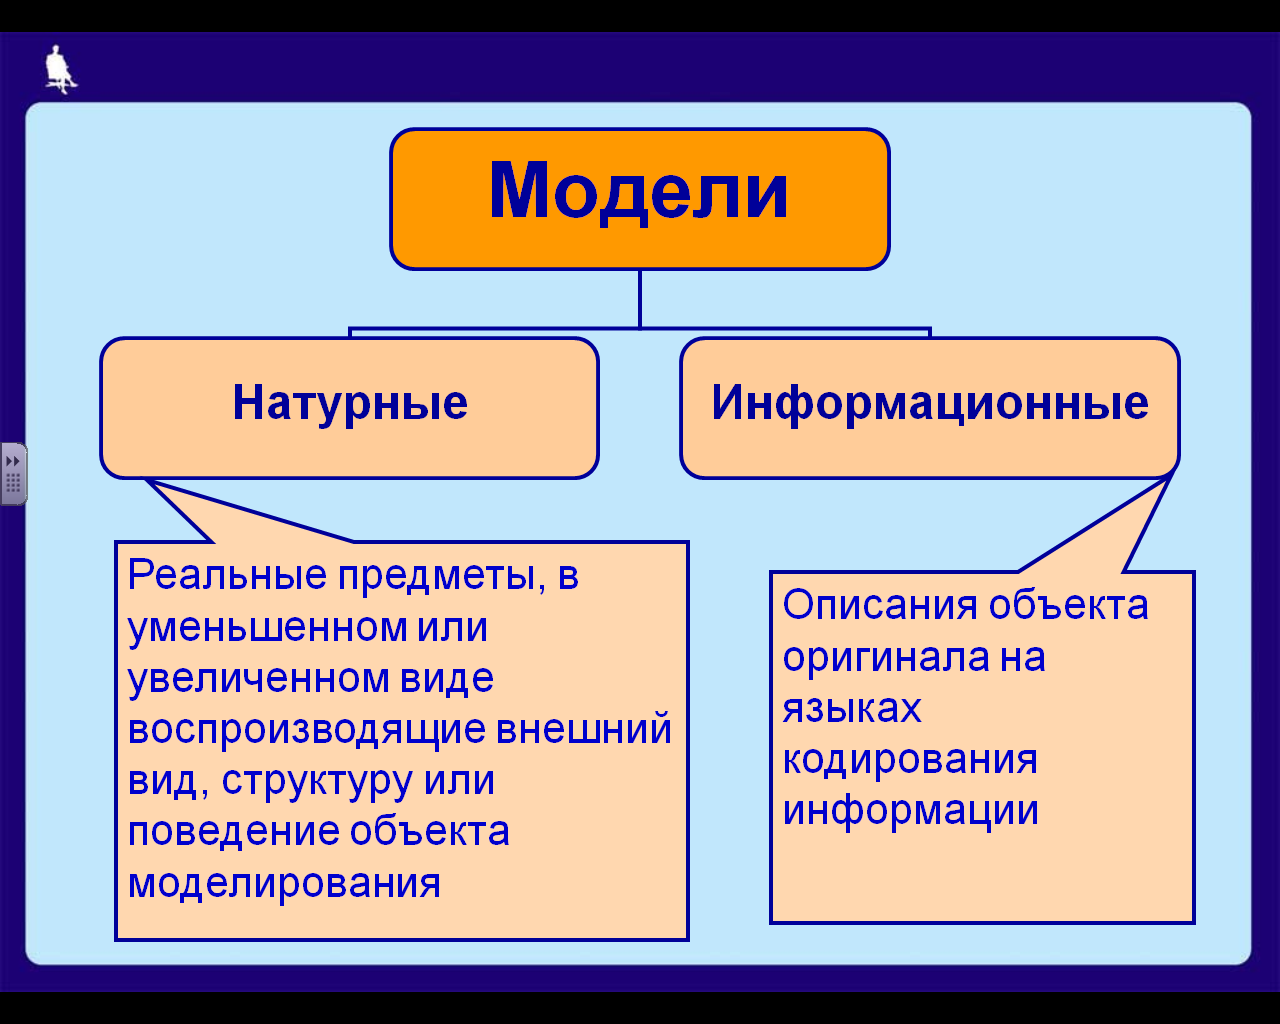 Примерами моделей являются. Натурные и информационные модели. Натуральные модели в информатике примеры. Модель объекта. Модель и моделирование в информатике.